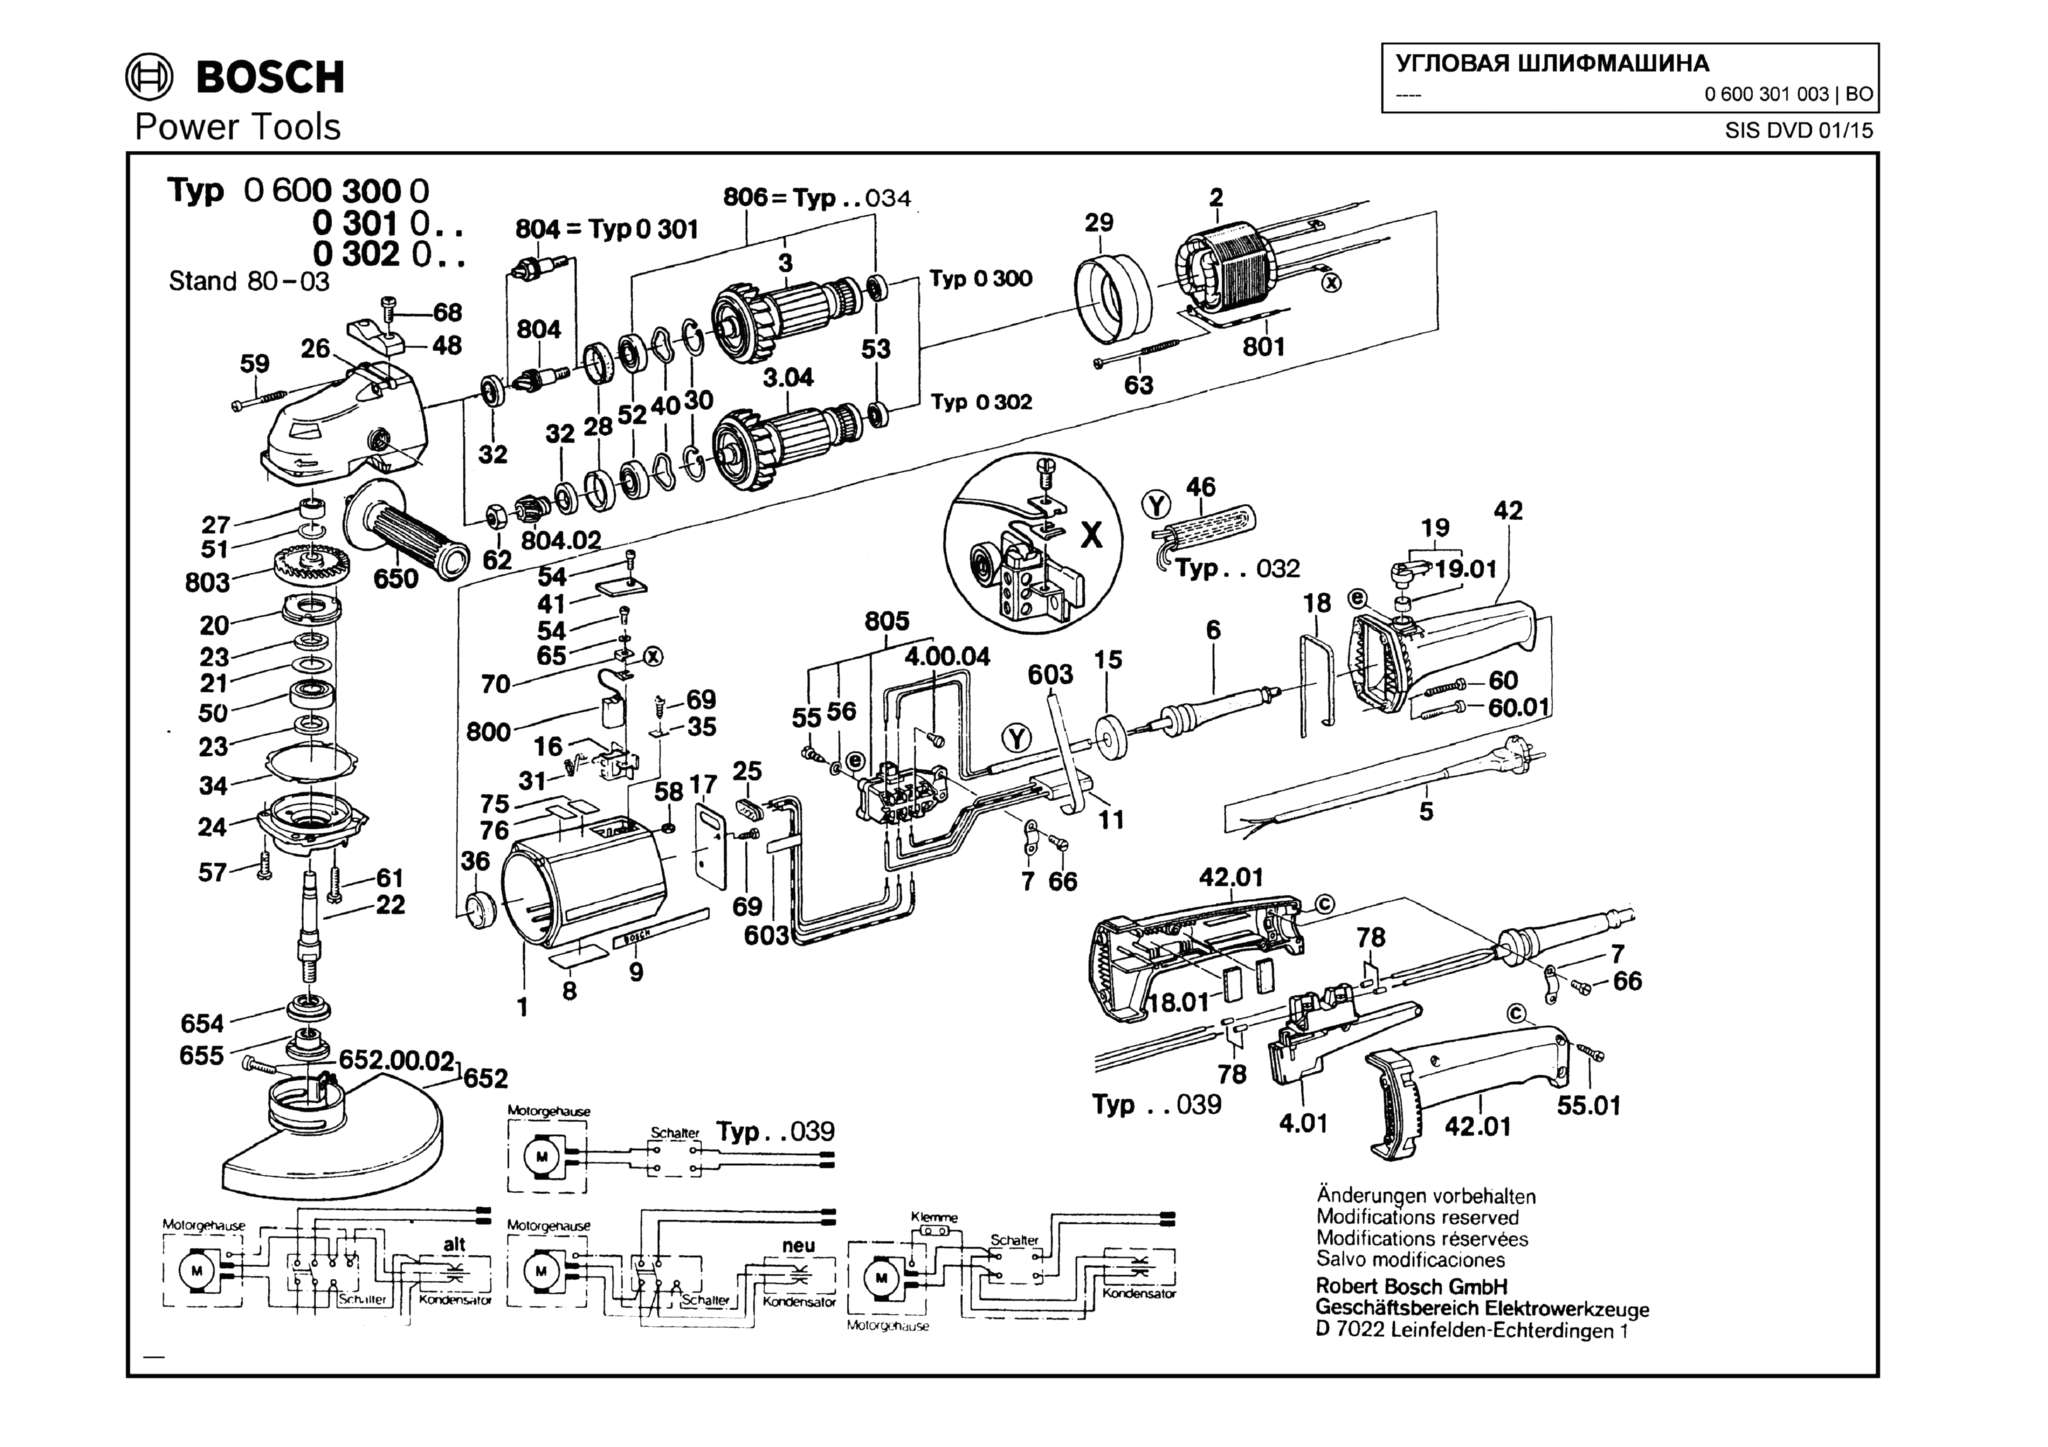 Запчасти, схема и деталировка Bosch (ТИП 0600301003)